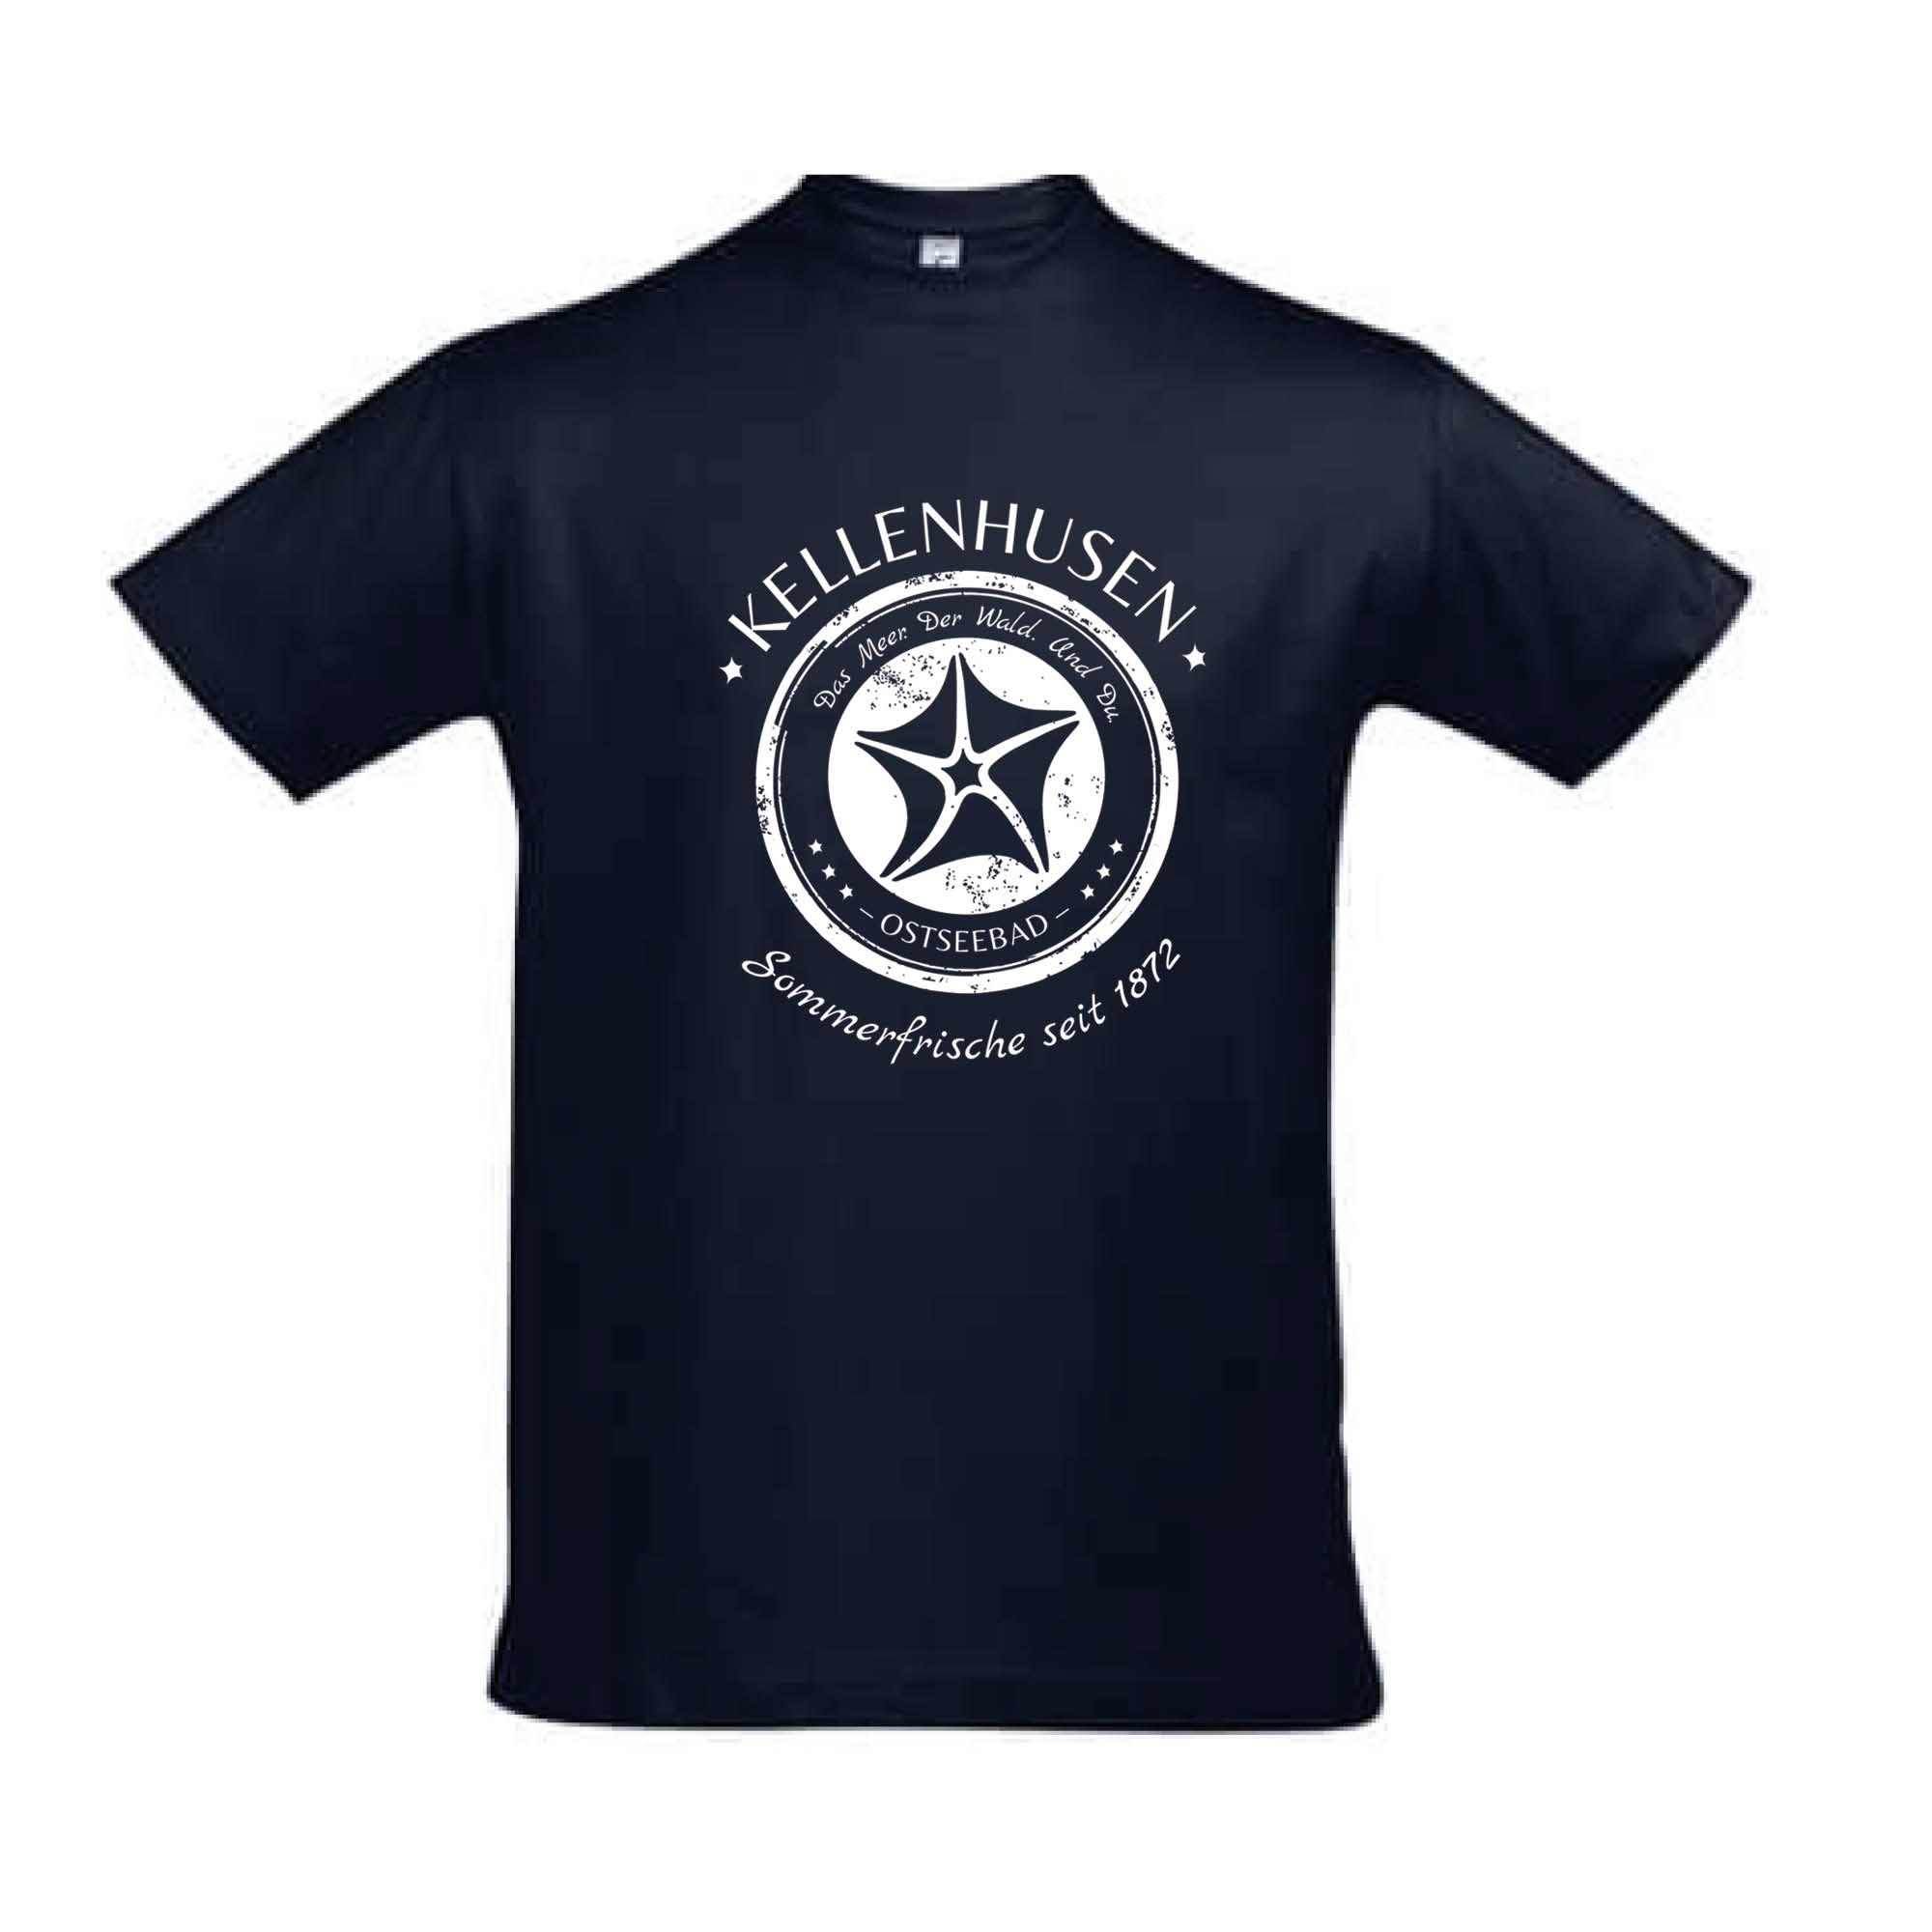 T-Shirt "Sommerfrische" - navy